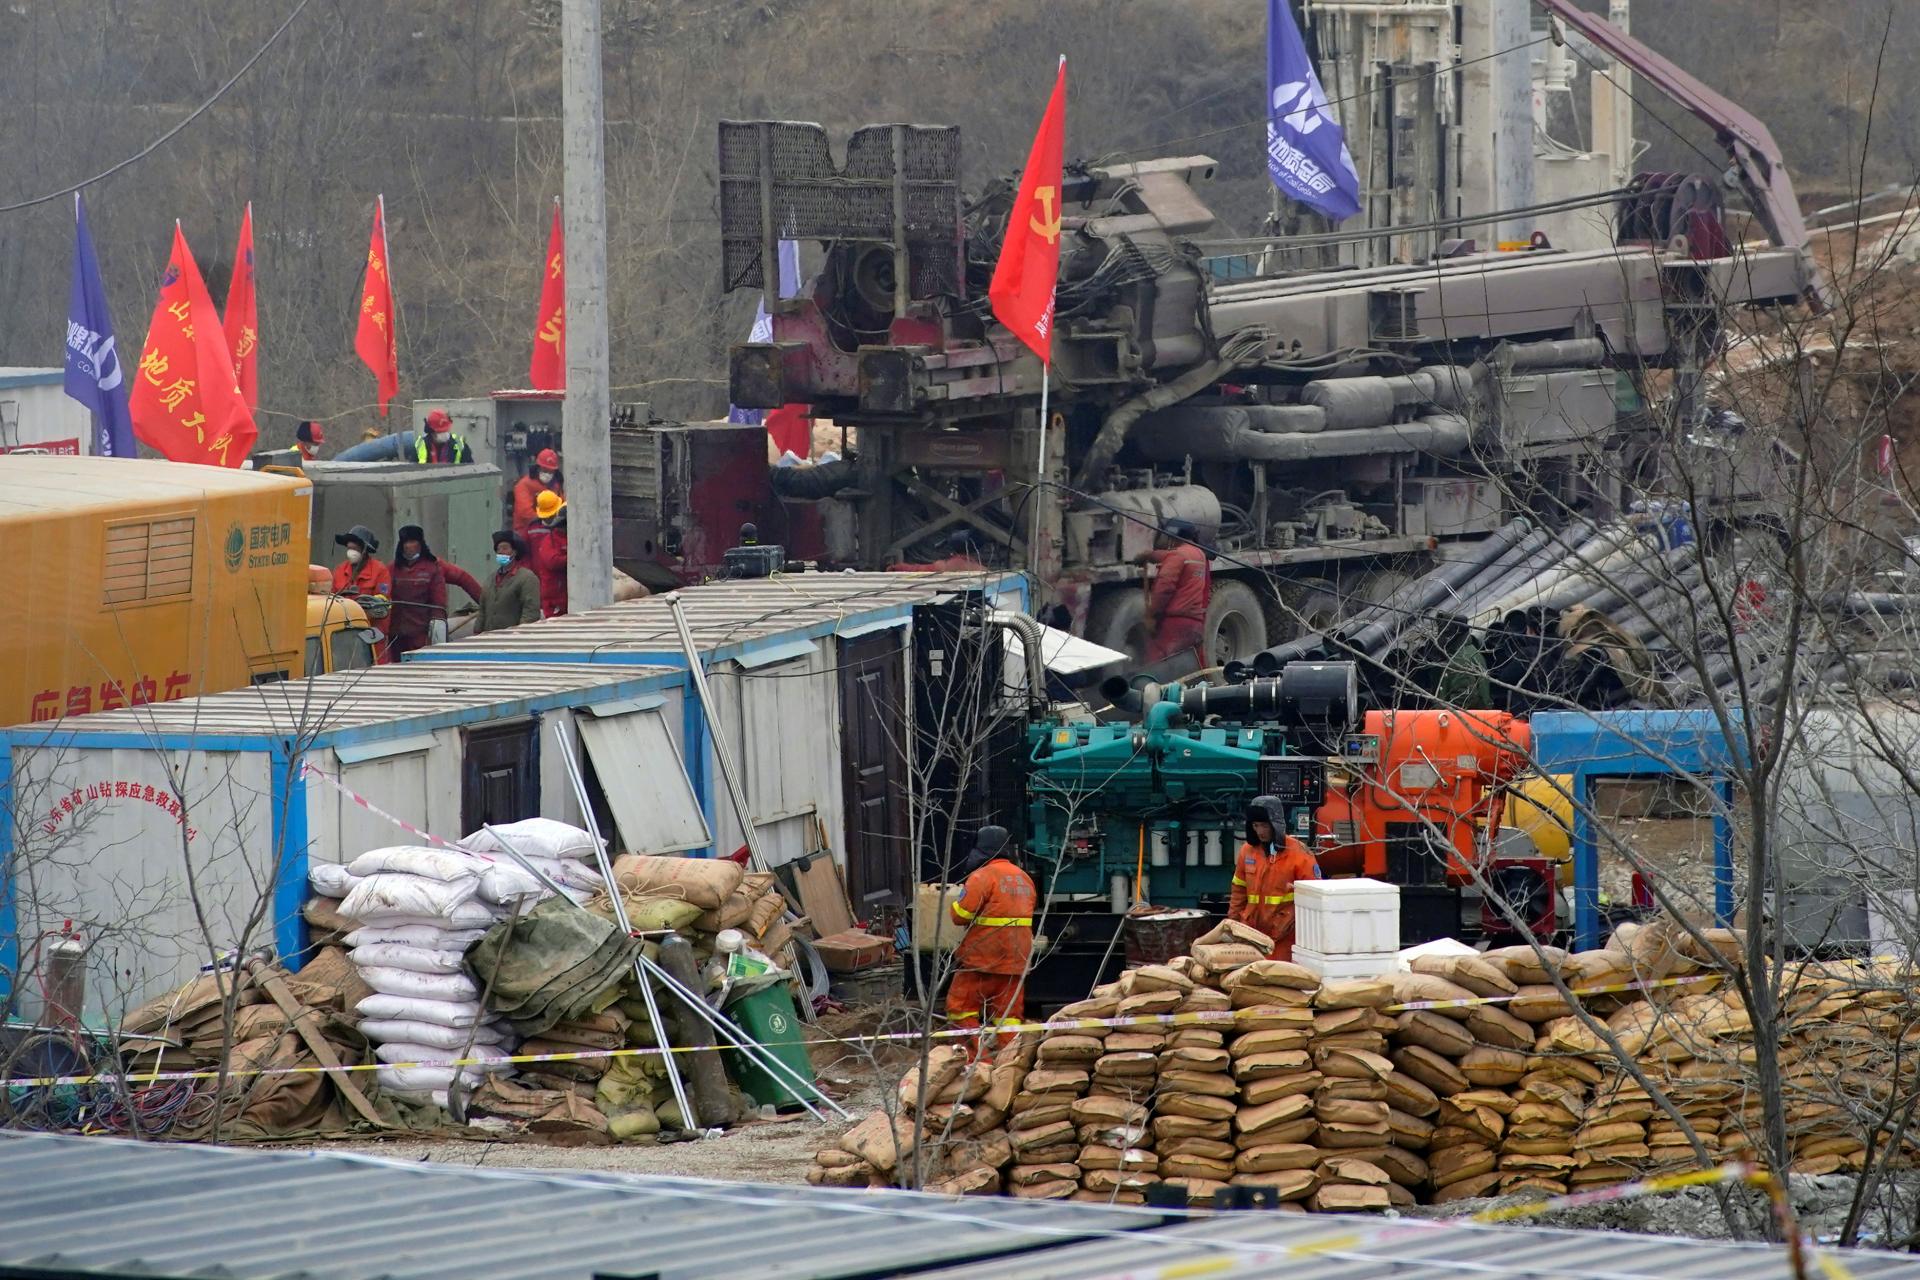 14 nap után 11 túlélőt ástak ki Kínában